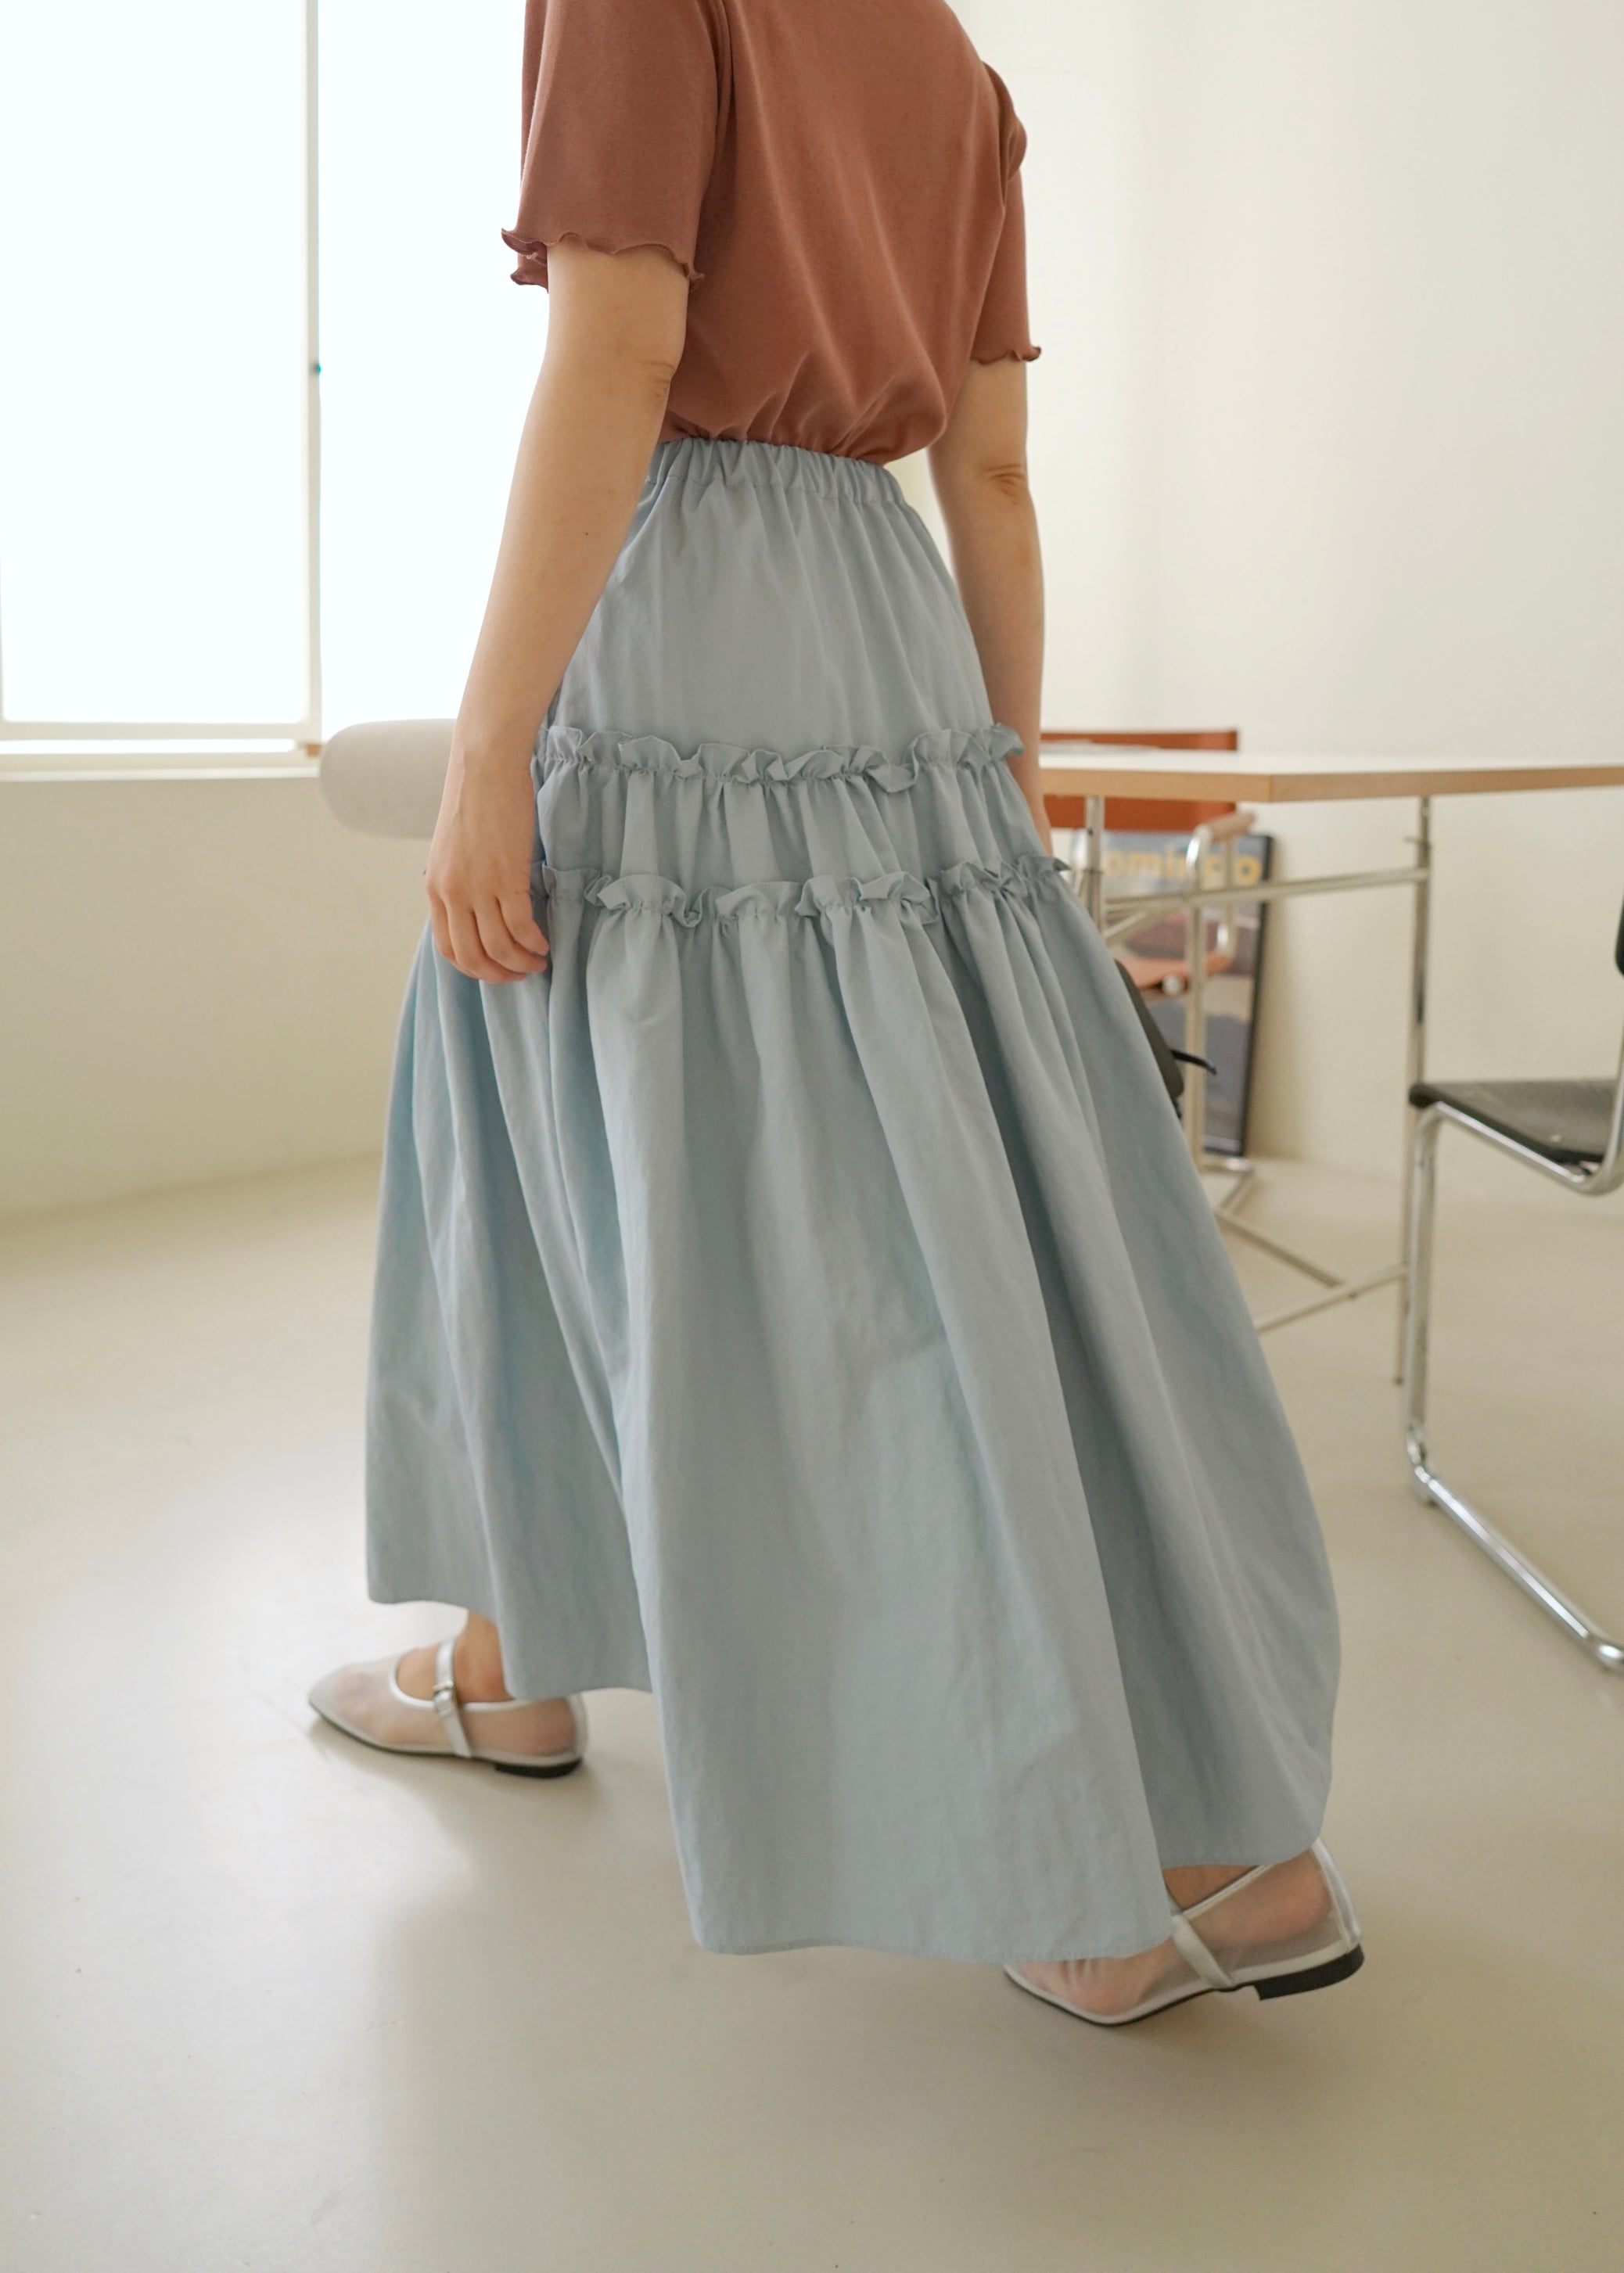 Elica ruffled bloom skirt